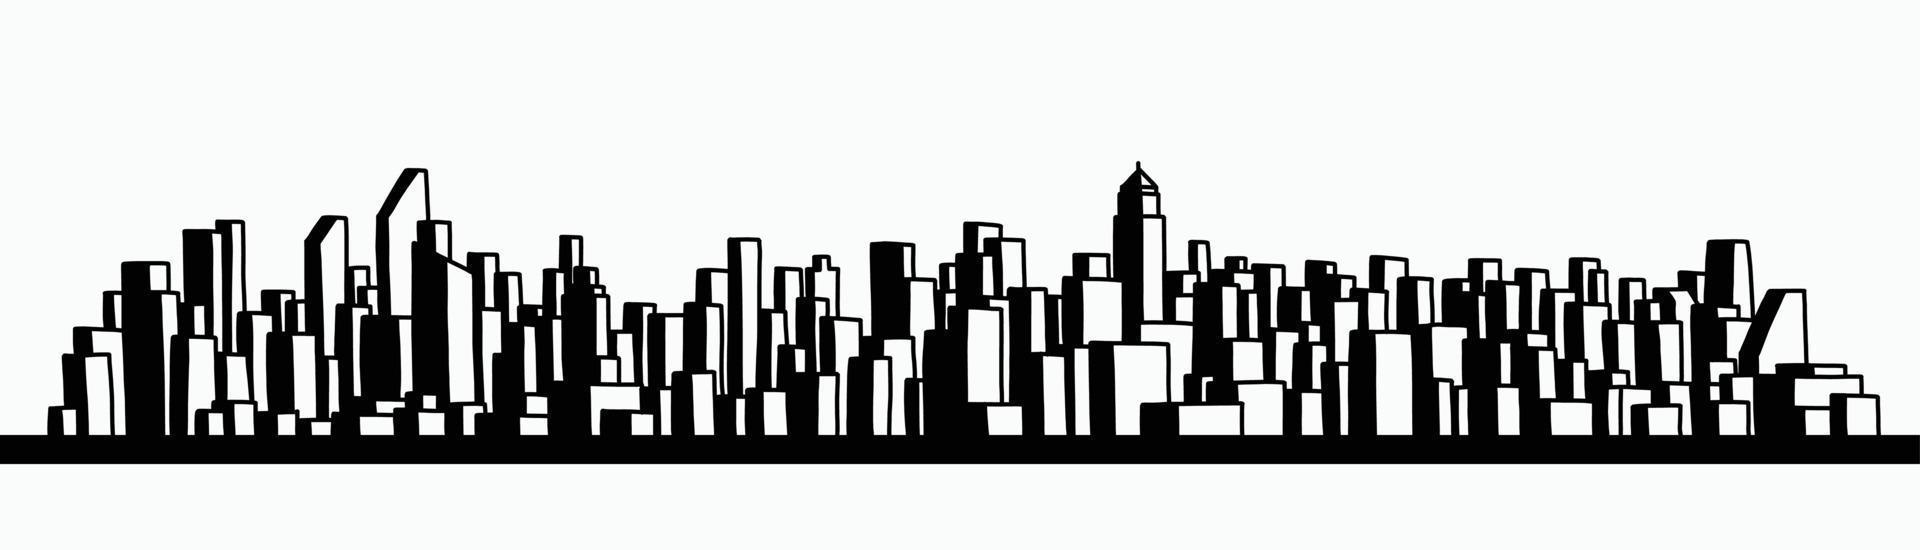 moderno paesaggio urbano skyline contorno doodle disegno su sfondo bianco. vettore